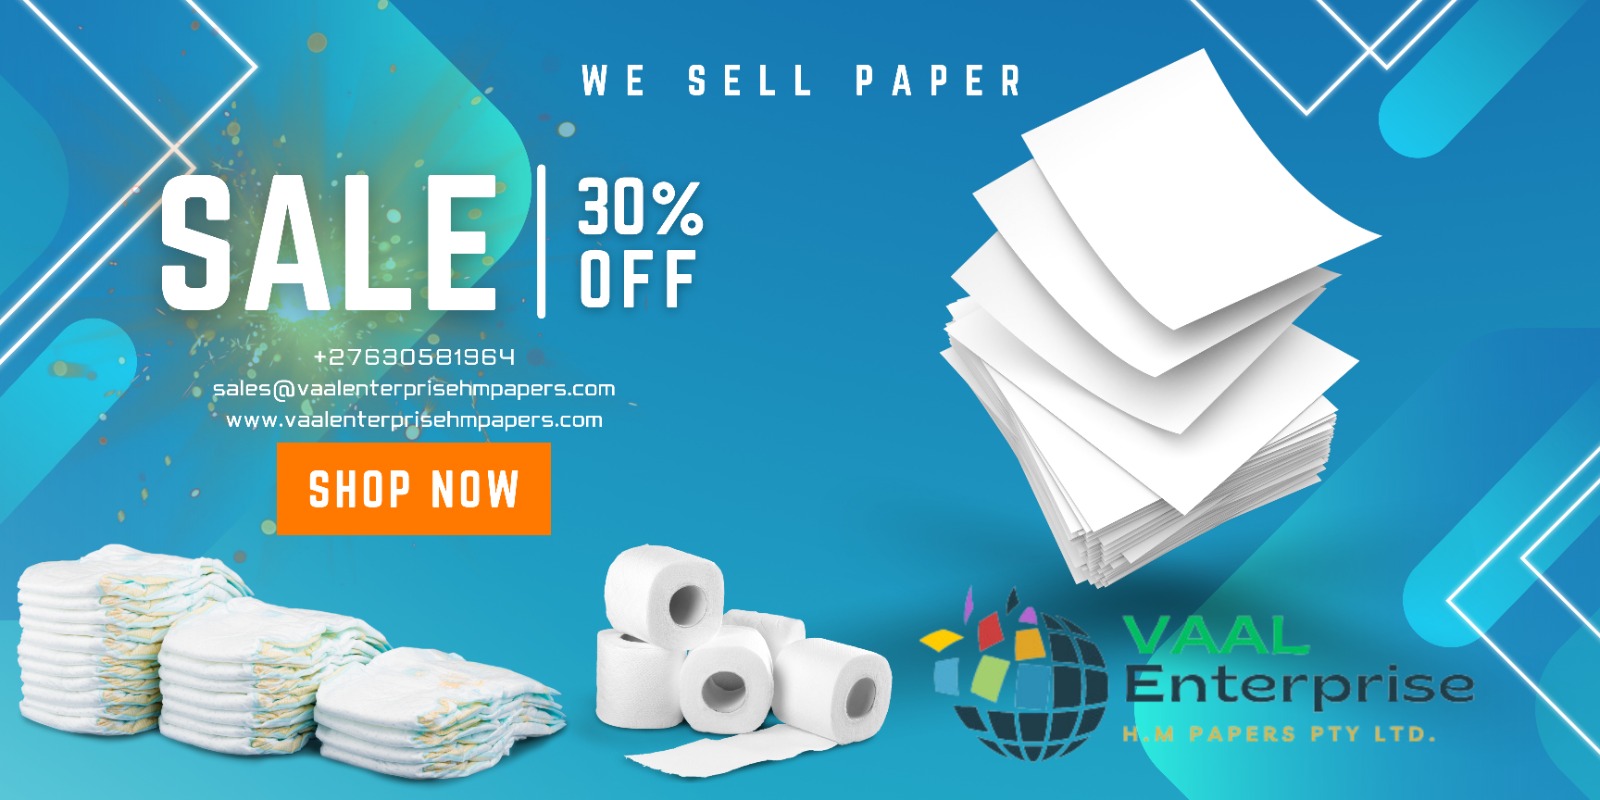 Vaal enterprise hm papers